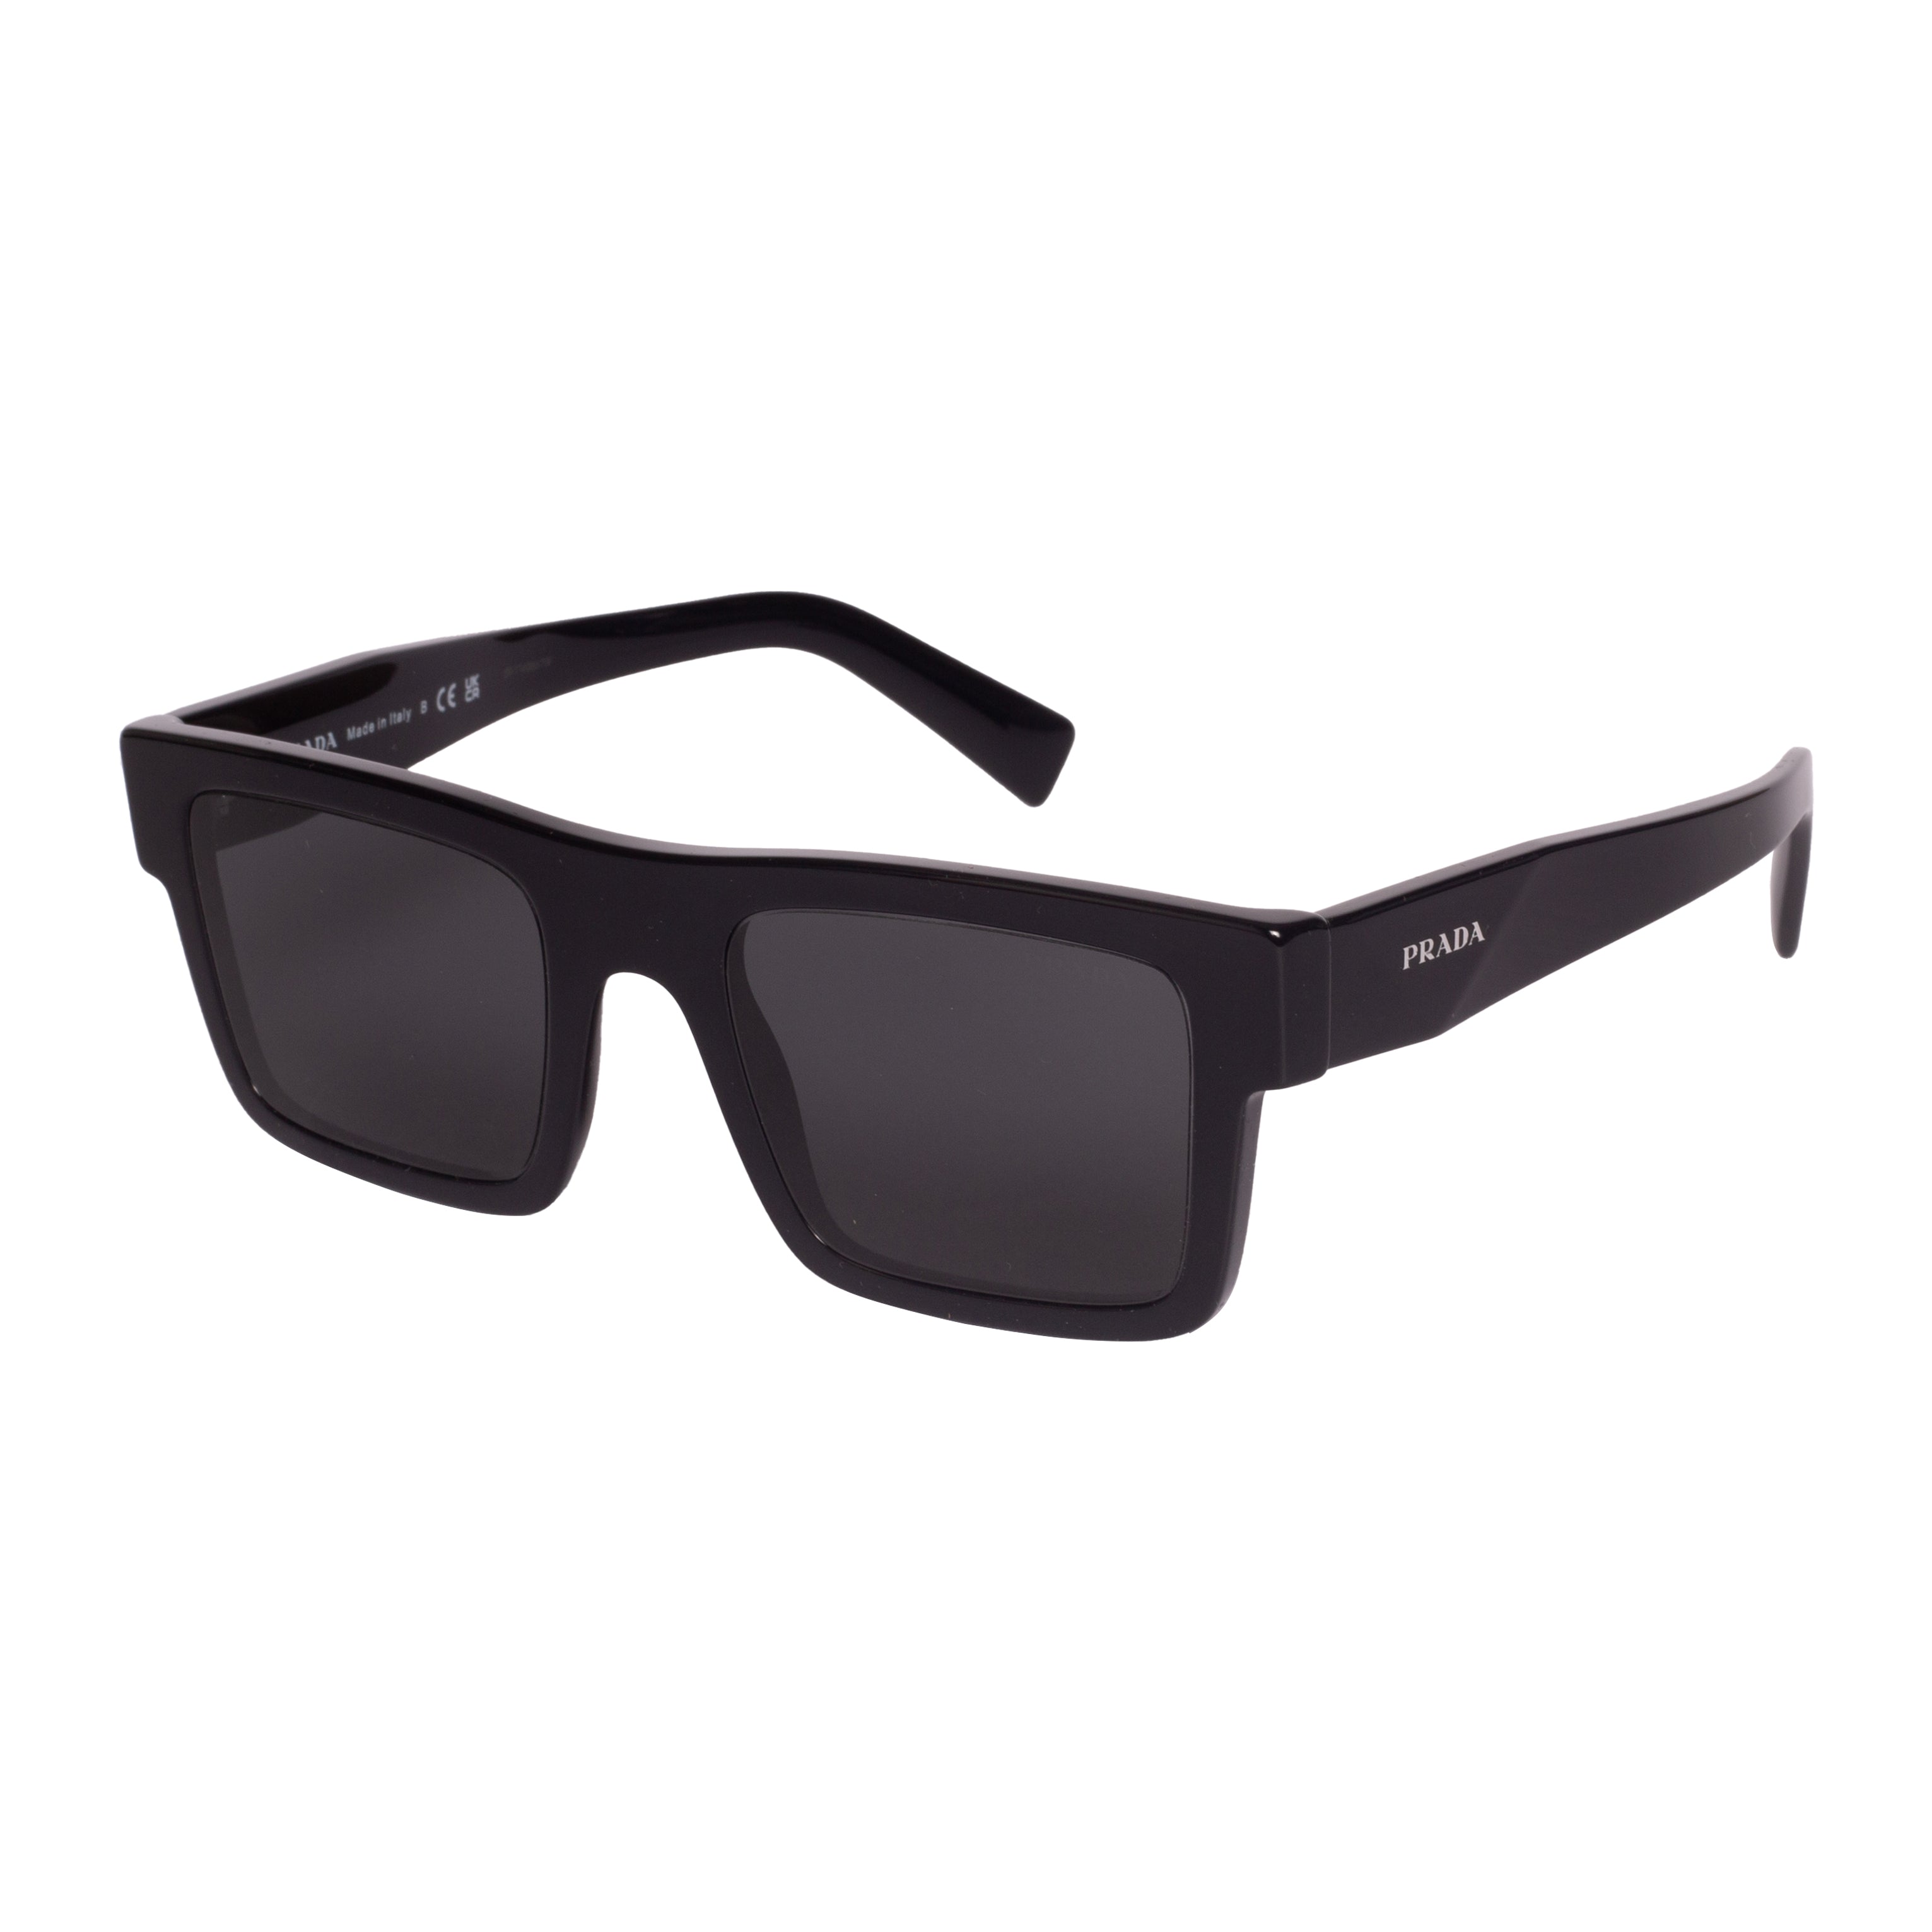 Prada-PR19WS-52-1AB5S0 Sunglasses - Premium Sunglasses from Prada - Just Rs. 36290! Shop now at Laxmi Opticians